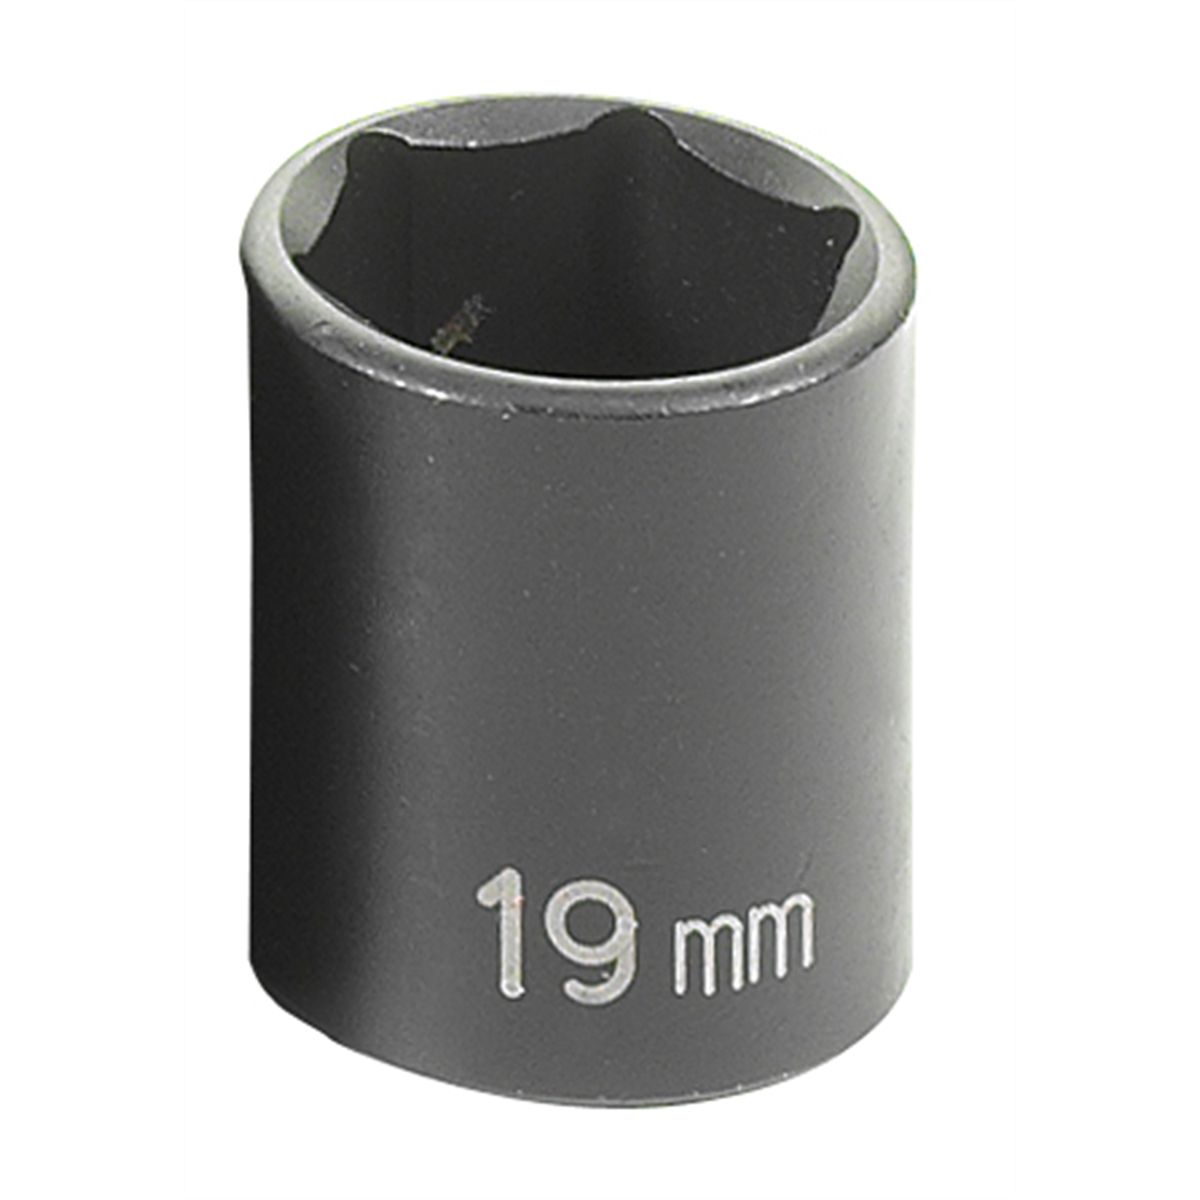 3/8" Drive x 19mm Standard Impact Socket